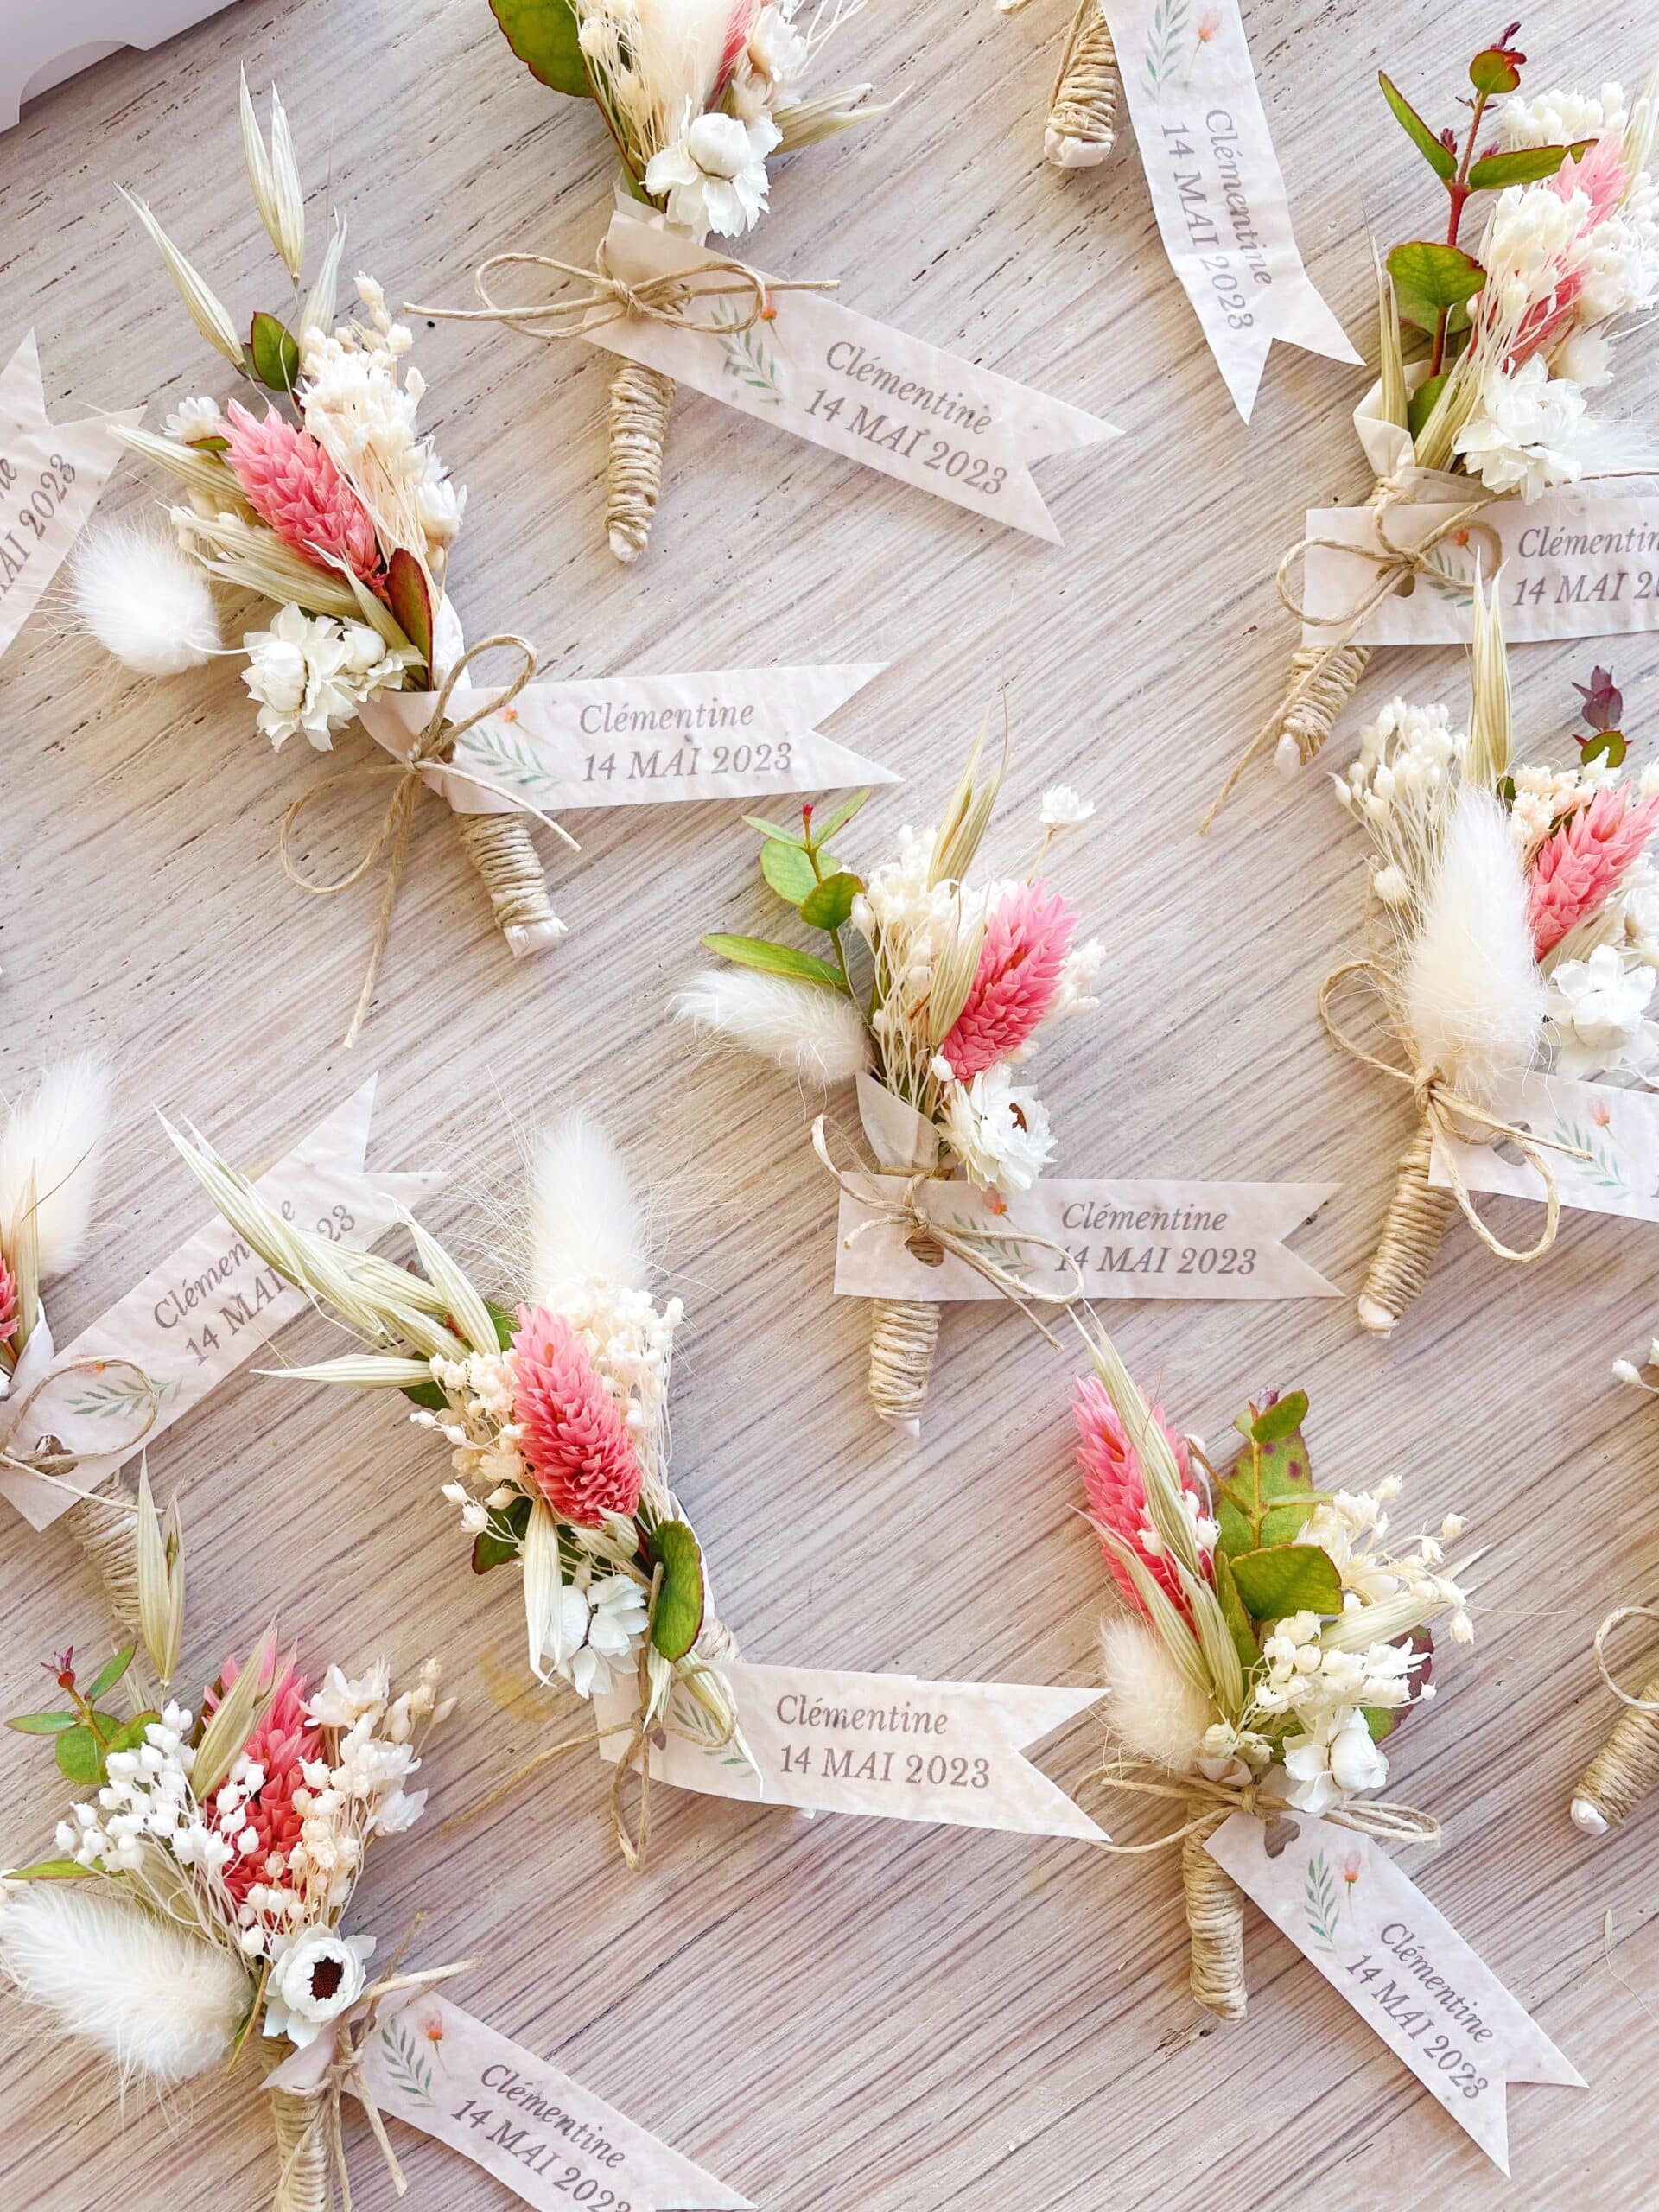 Décoration et petits cadeaux d'invités en fleurs séchées pour mariage, communion, baptême et grandes occasions made in France sur la Côte d'Opale